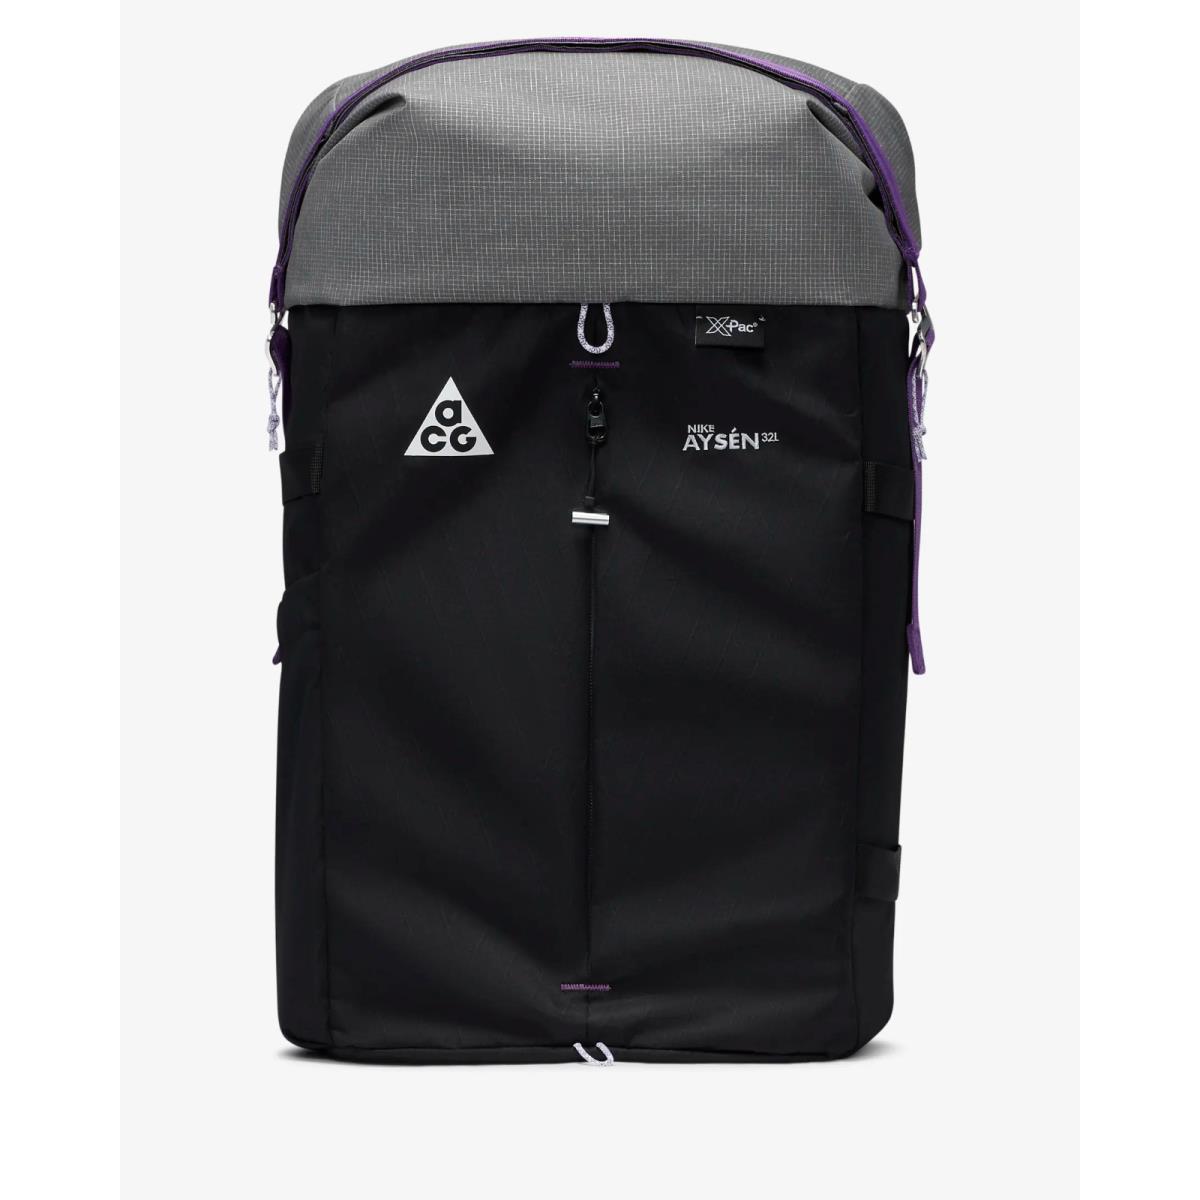 Nike Acg Ays n Day Pack 32L Hiking Trail Backpack Black Cool Grey DV4054-010